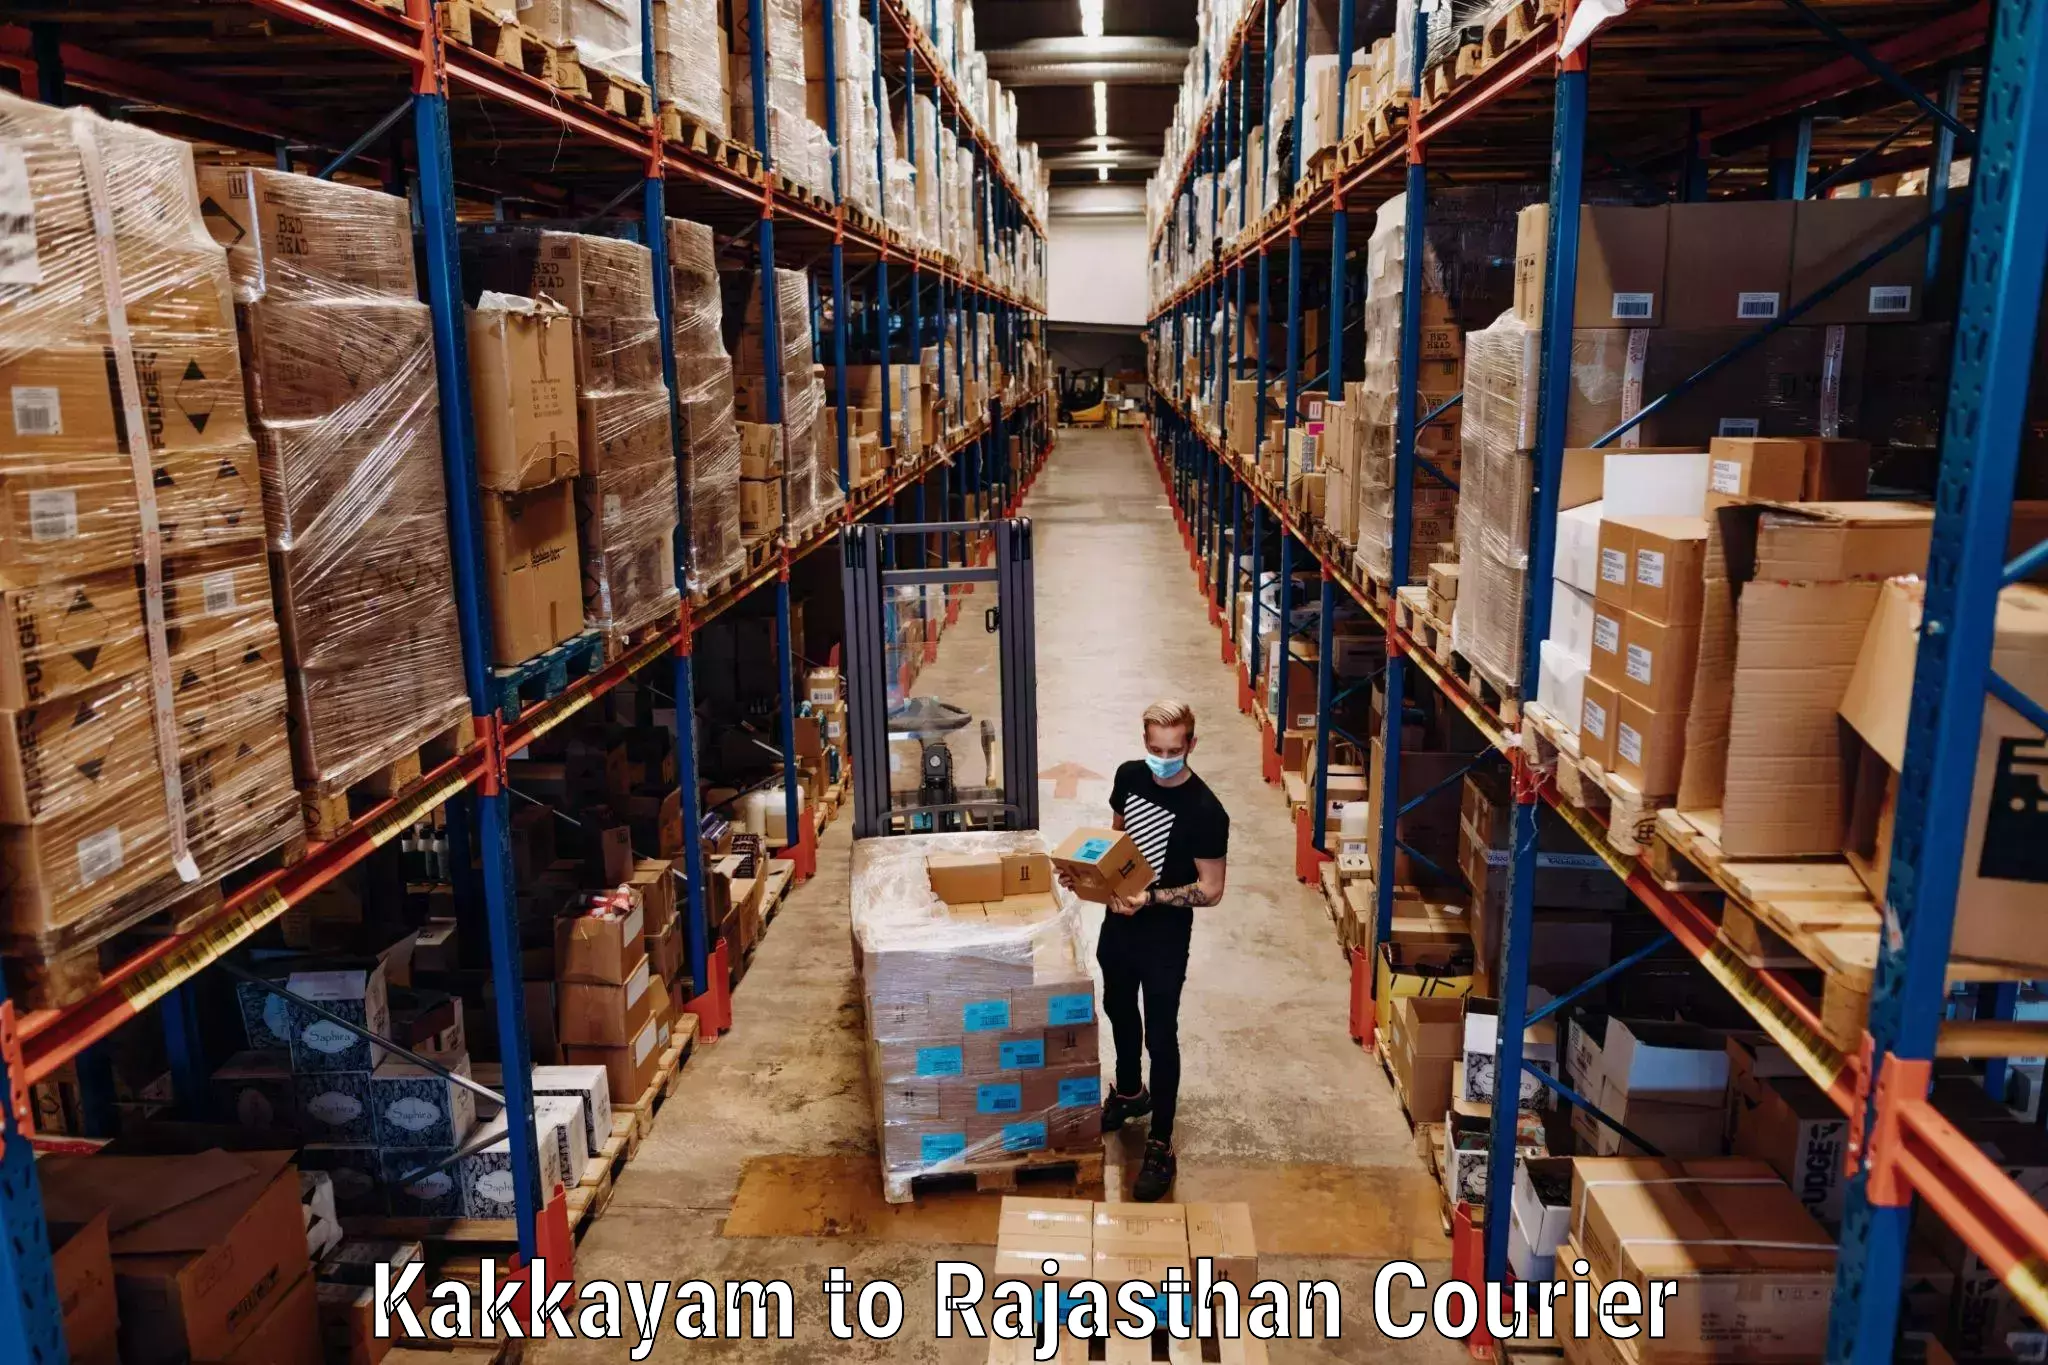 Baggage shipping service Kakkayam to Ras Pali